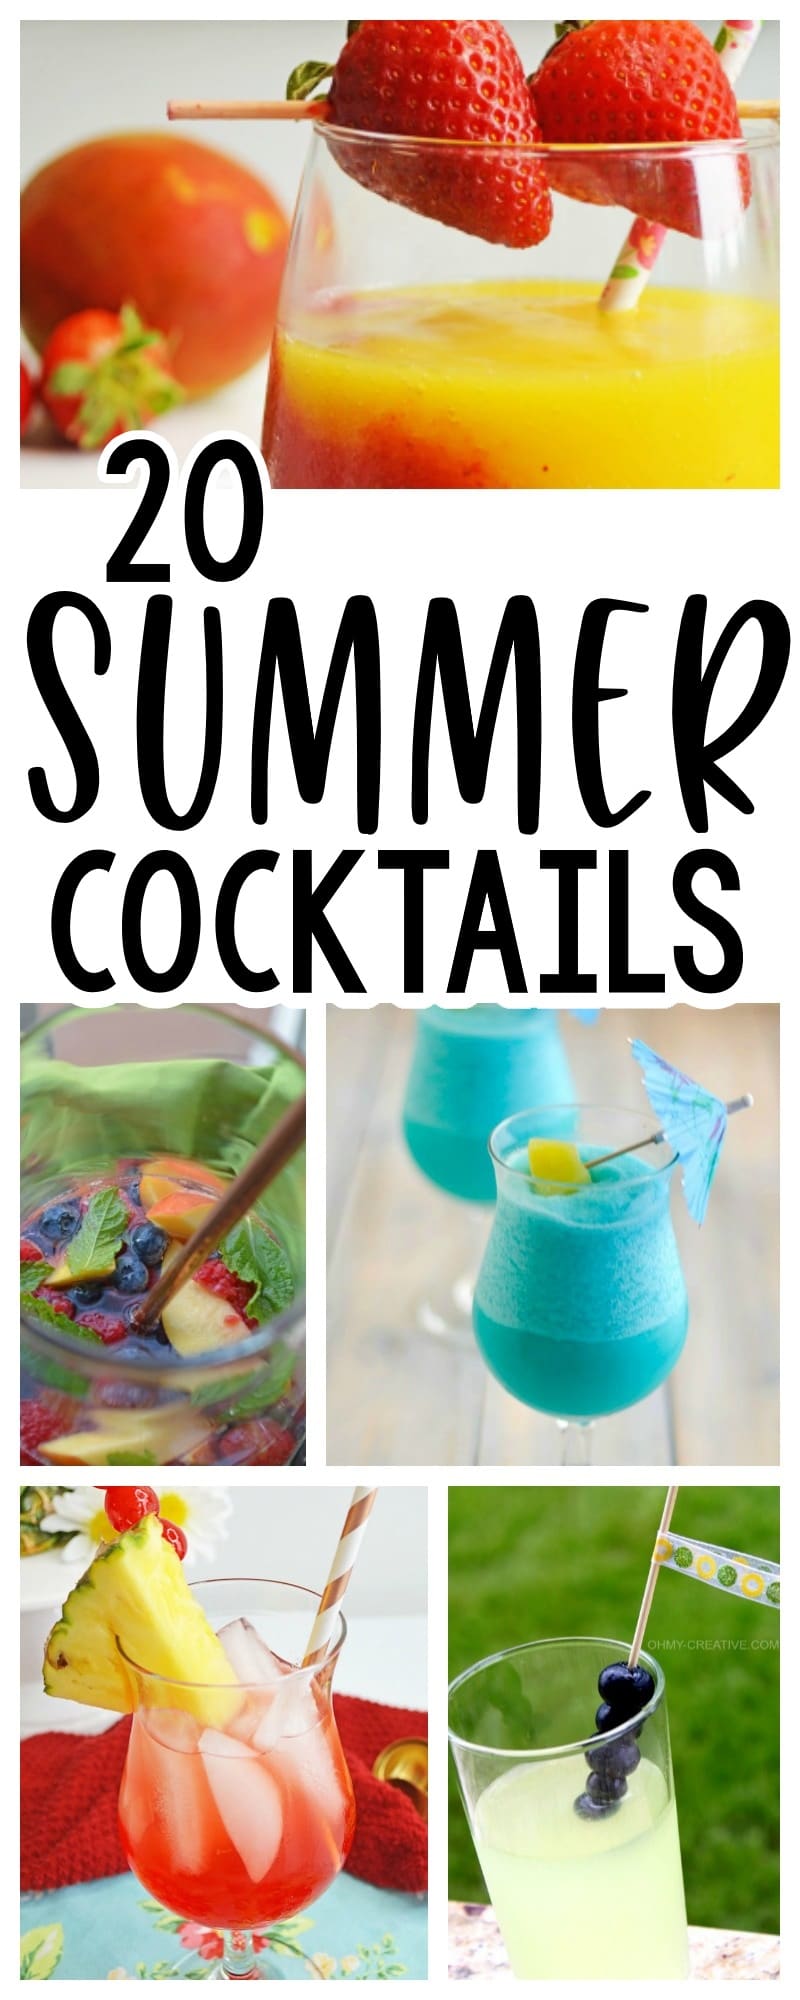 20 Summer Cocktails